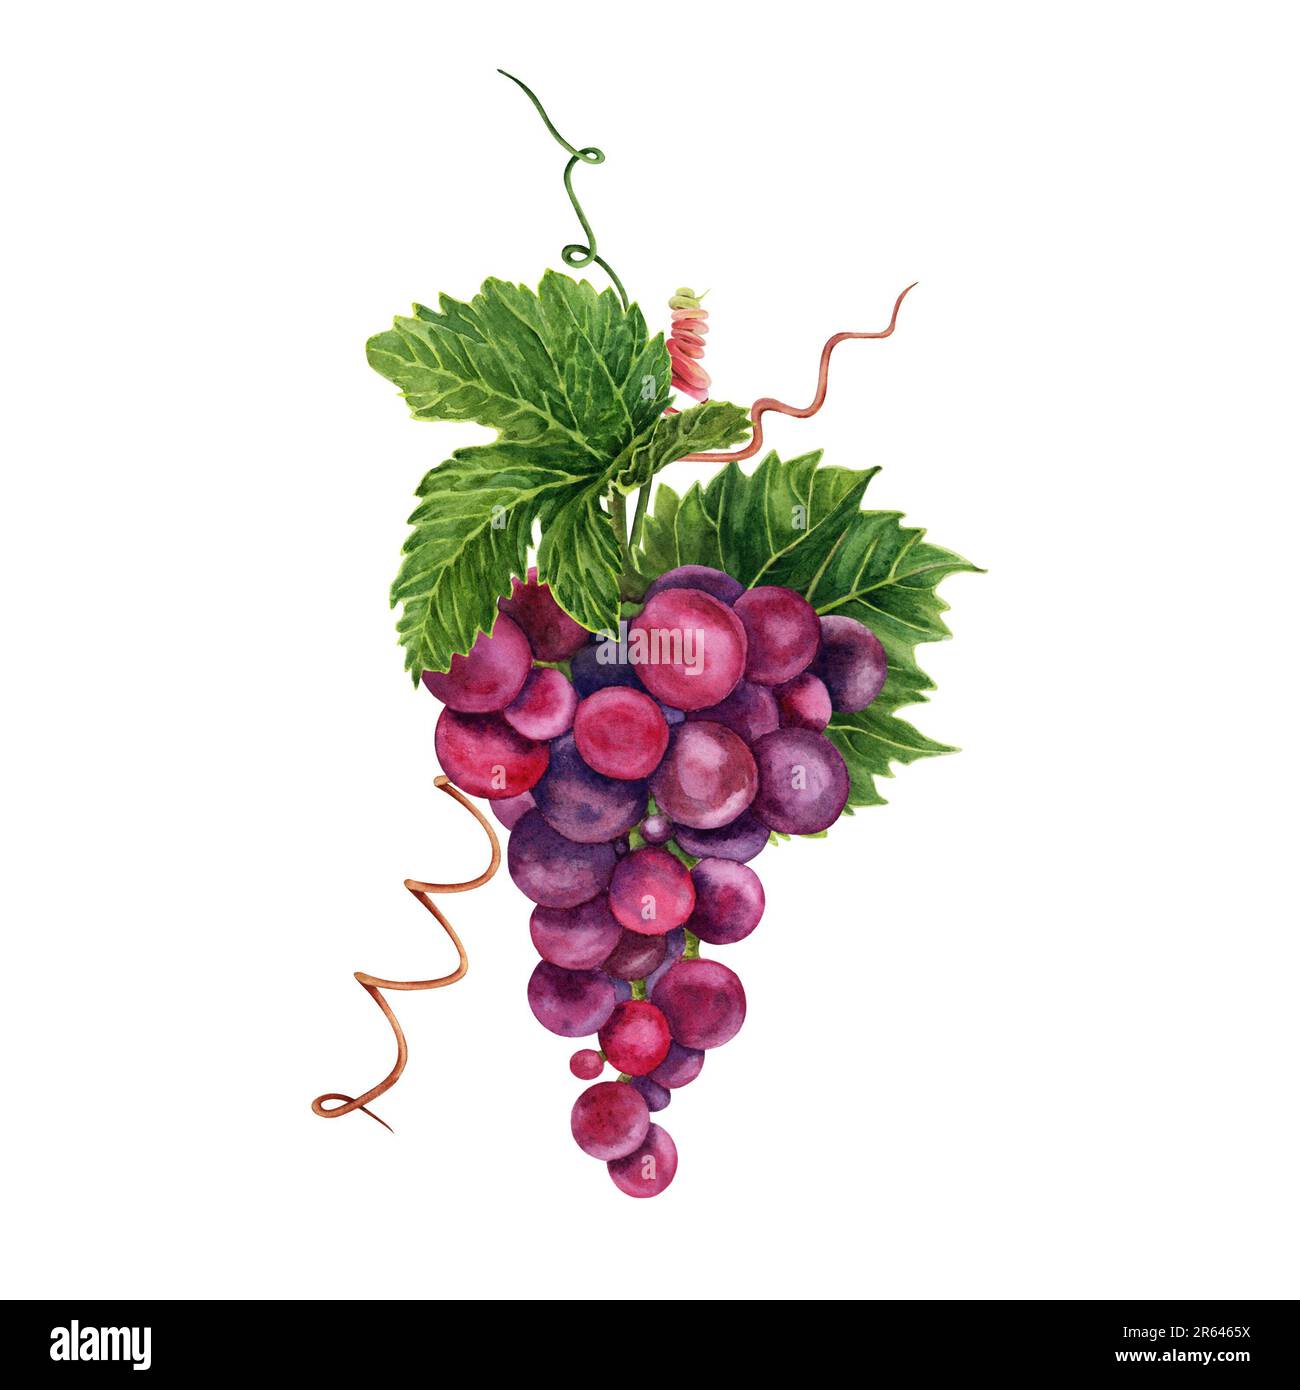 Bouquet de raisins avec des feuilles de vigne vertes et des tendrils. Illustration aquarelle dessinée à la main isolée sur fond blanc. Banque D'Images